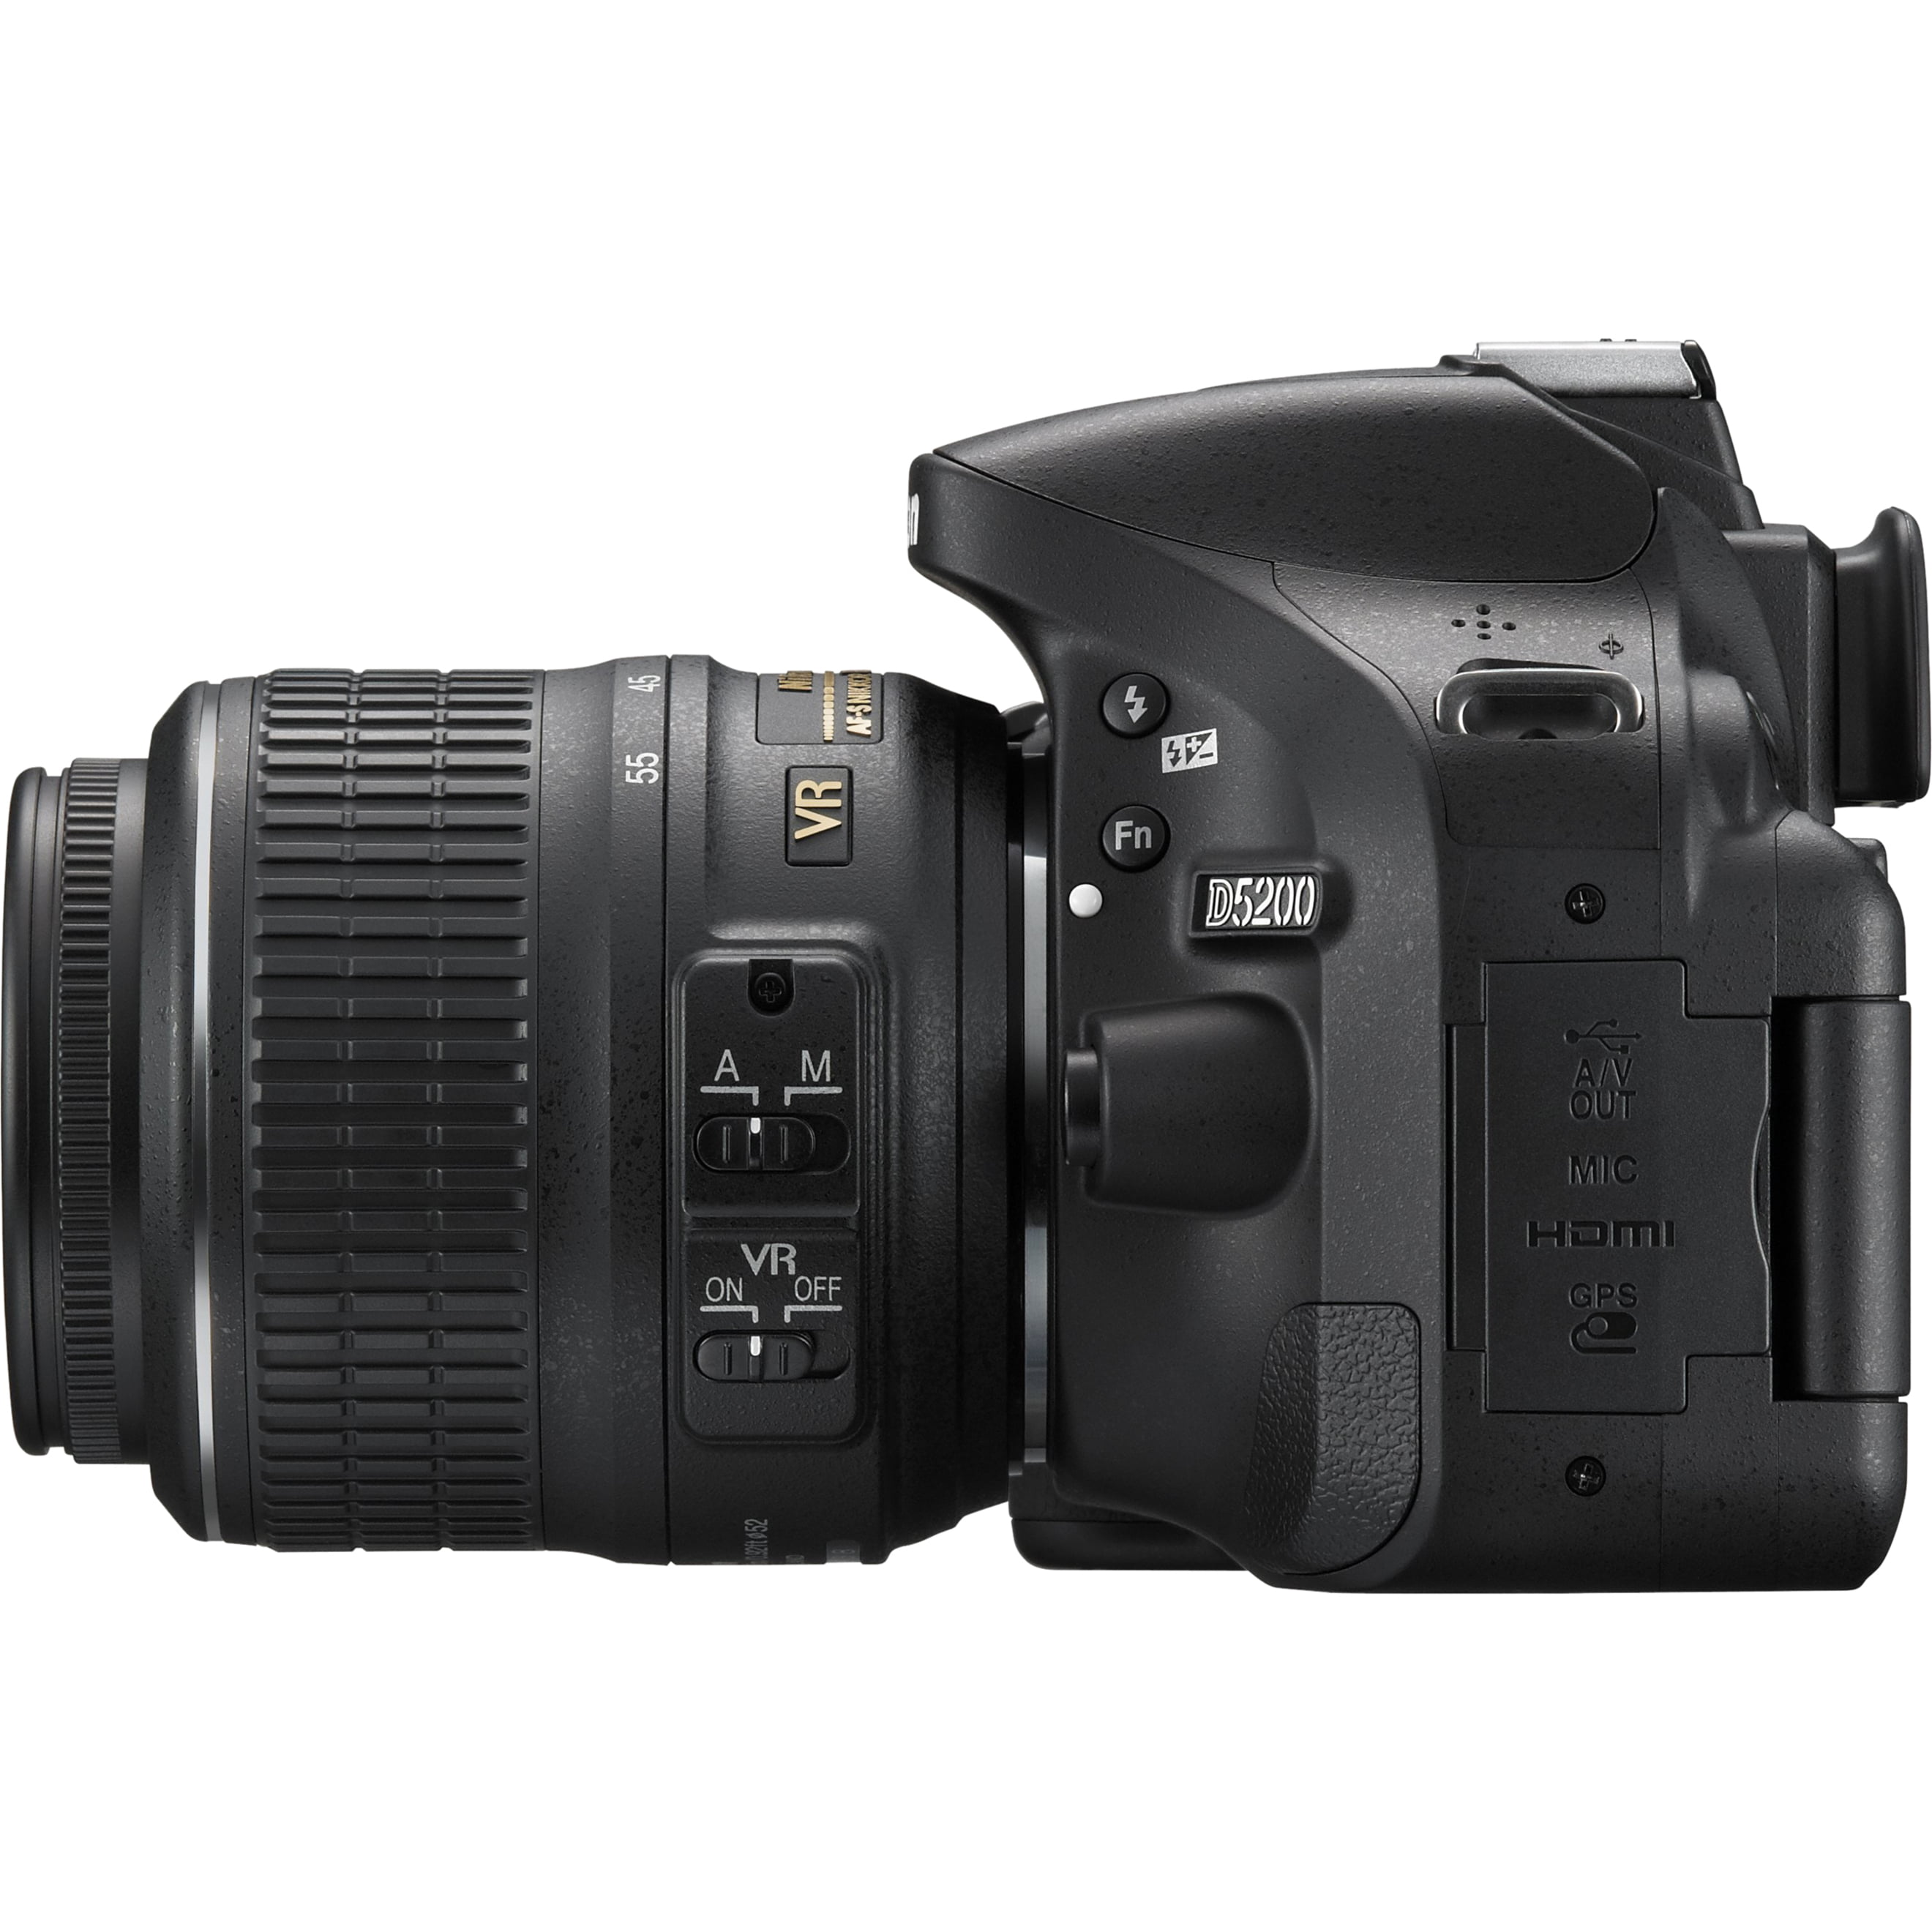 Zonnig Verhandeling escaleren Nikon D5200 24.1 Megapixel Digital SLR Camera with Lens, 0.71", 2.17",  Black - Walmart.com